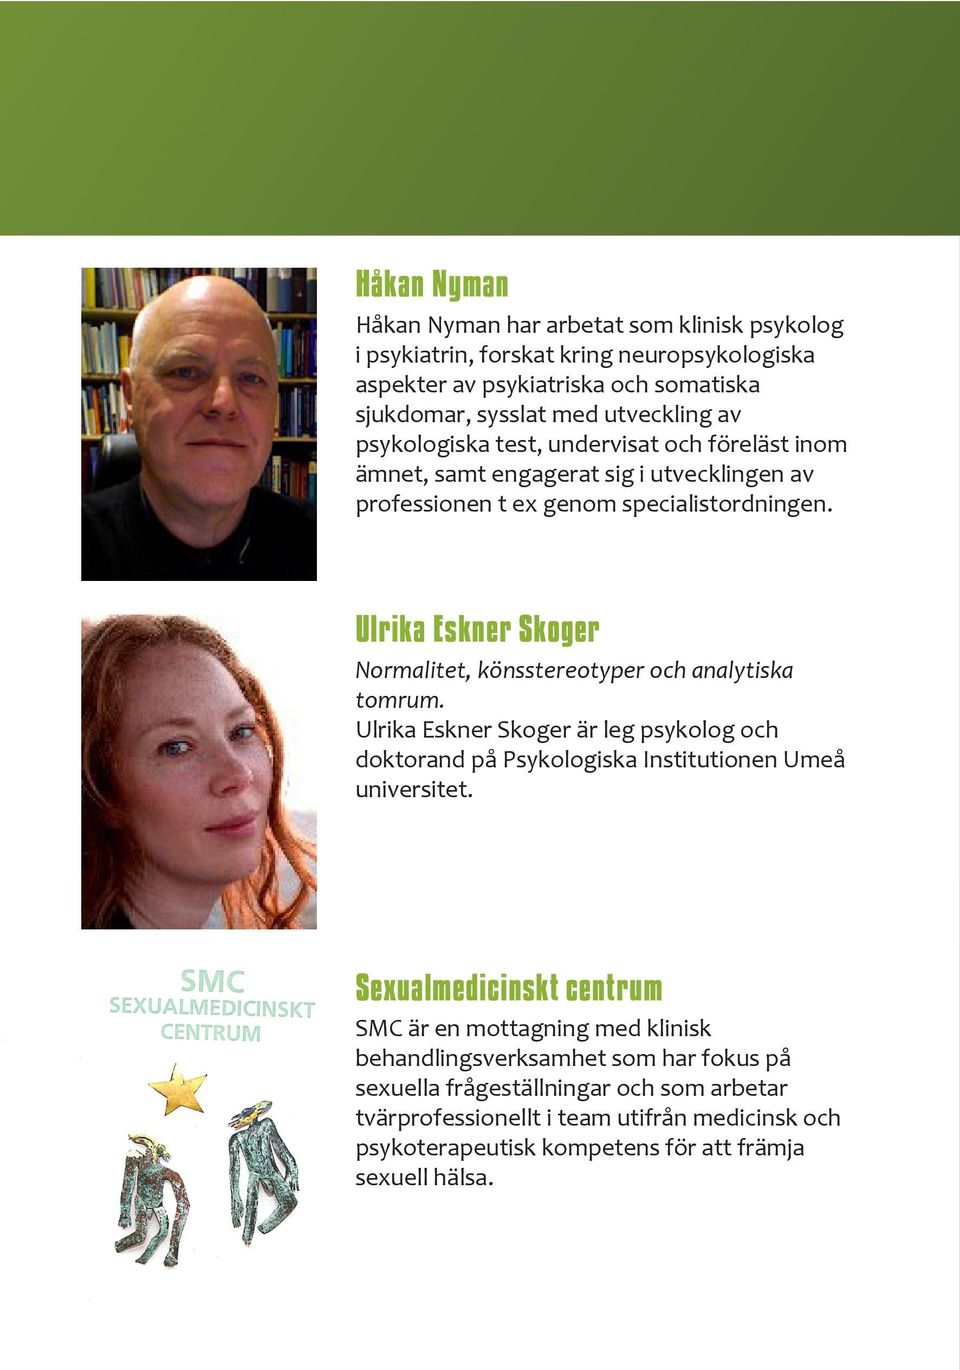 Ulrika Eskner Skoger Normalitet, könsstereotyper och analytiska tomrum. Ulrika Eskner Skoger är leg psykolog och doktorand på Psykologiska Institutionen Umeå universitet.